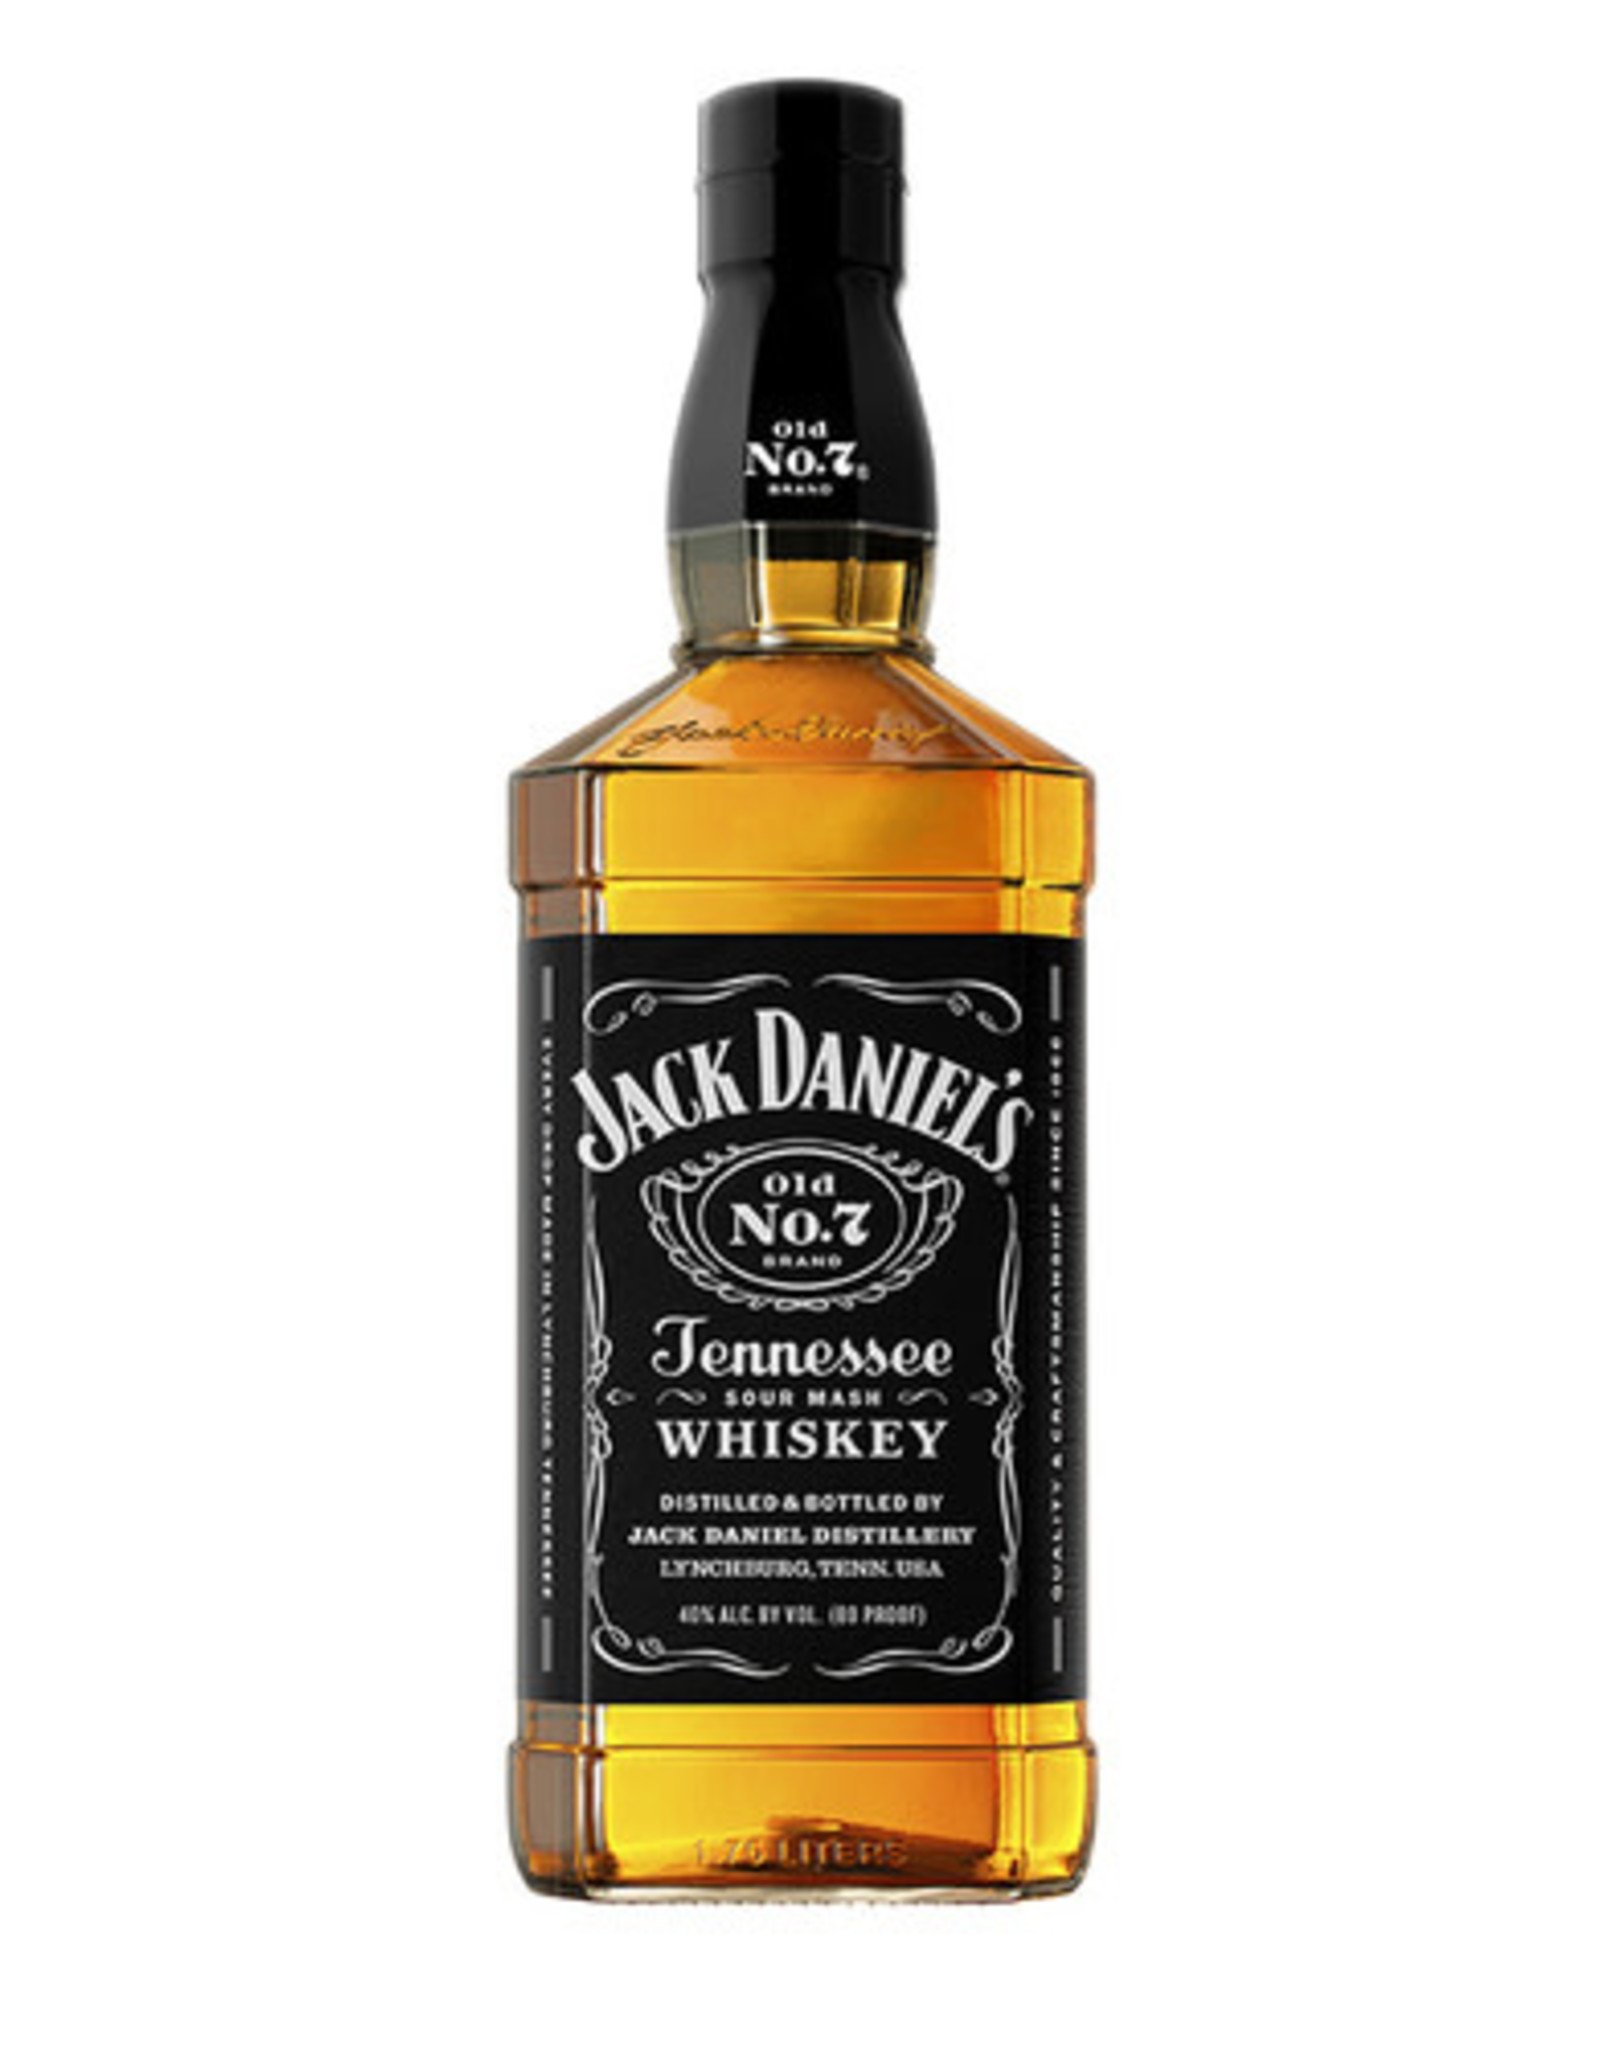 Jack Daniel's JACK DANIEL'S - OLD NO. 7 - BLACK LABEL - 80 PR. - 1.75 L